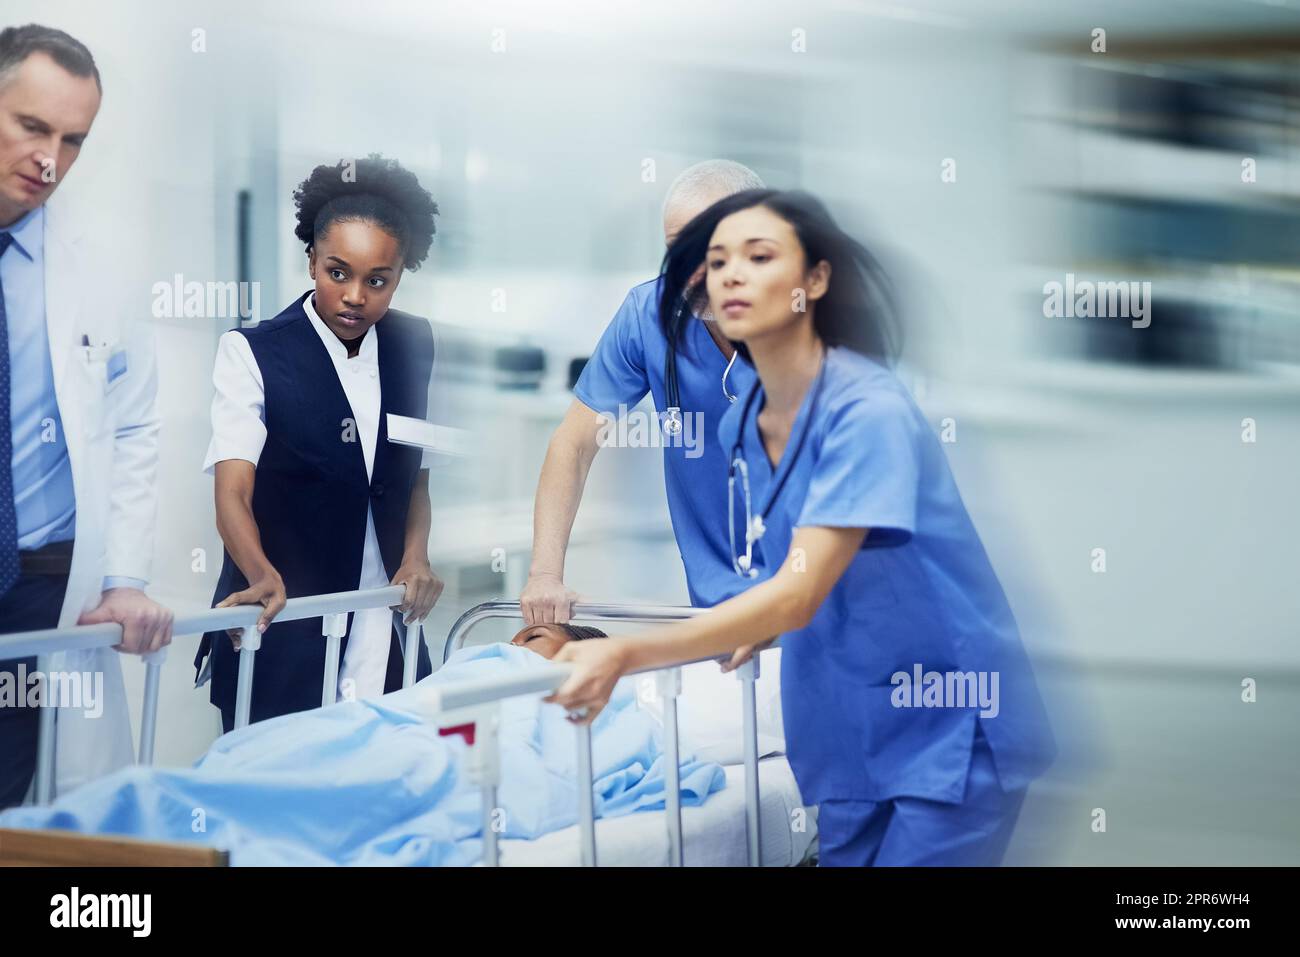 Corsa verso l'ER. Shot di un gruppo di professionisti medici che precipitano un paziente su un gurney lungo un corridoio ospedaliero. Foto Stock